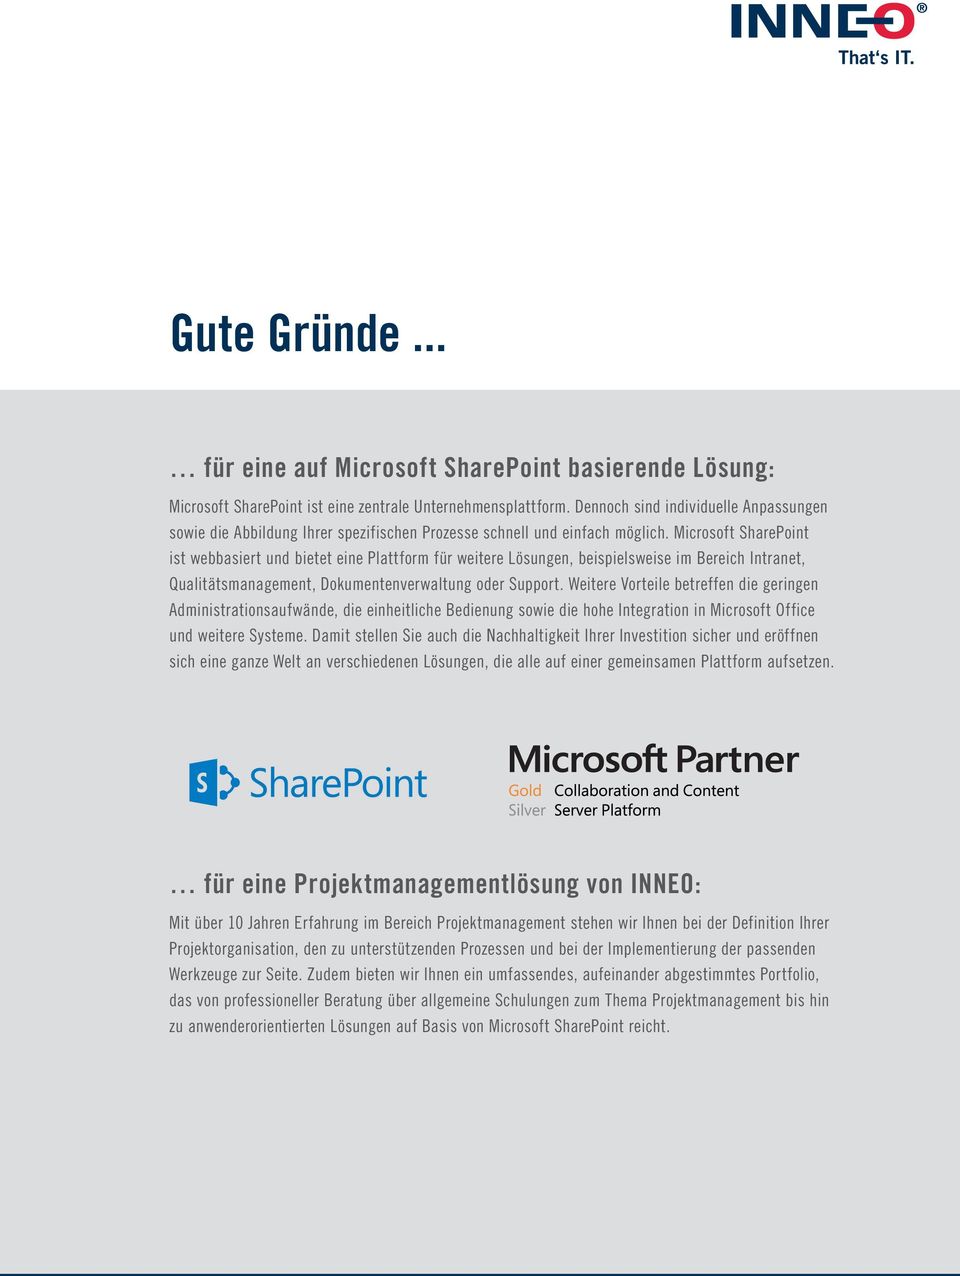 Microsoft SharePoint ist webbasiert und bietet eine Plattform für weitere Lösungen, beispielsweise im Bereich Intranet, Qualitätsmanagement, Dokumentenverwaltung oder Support.